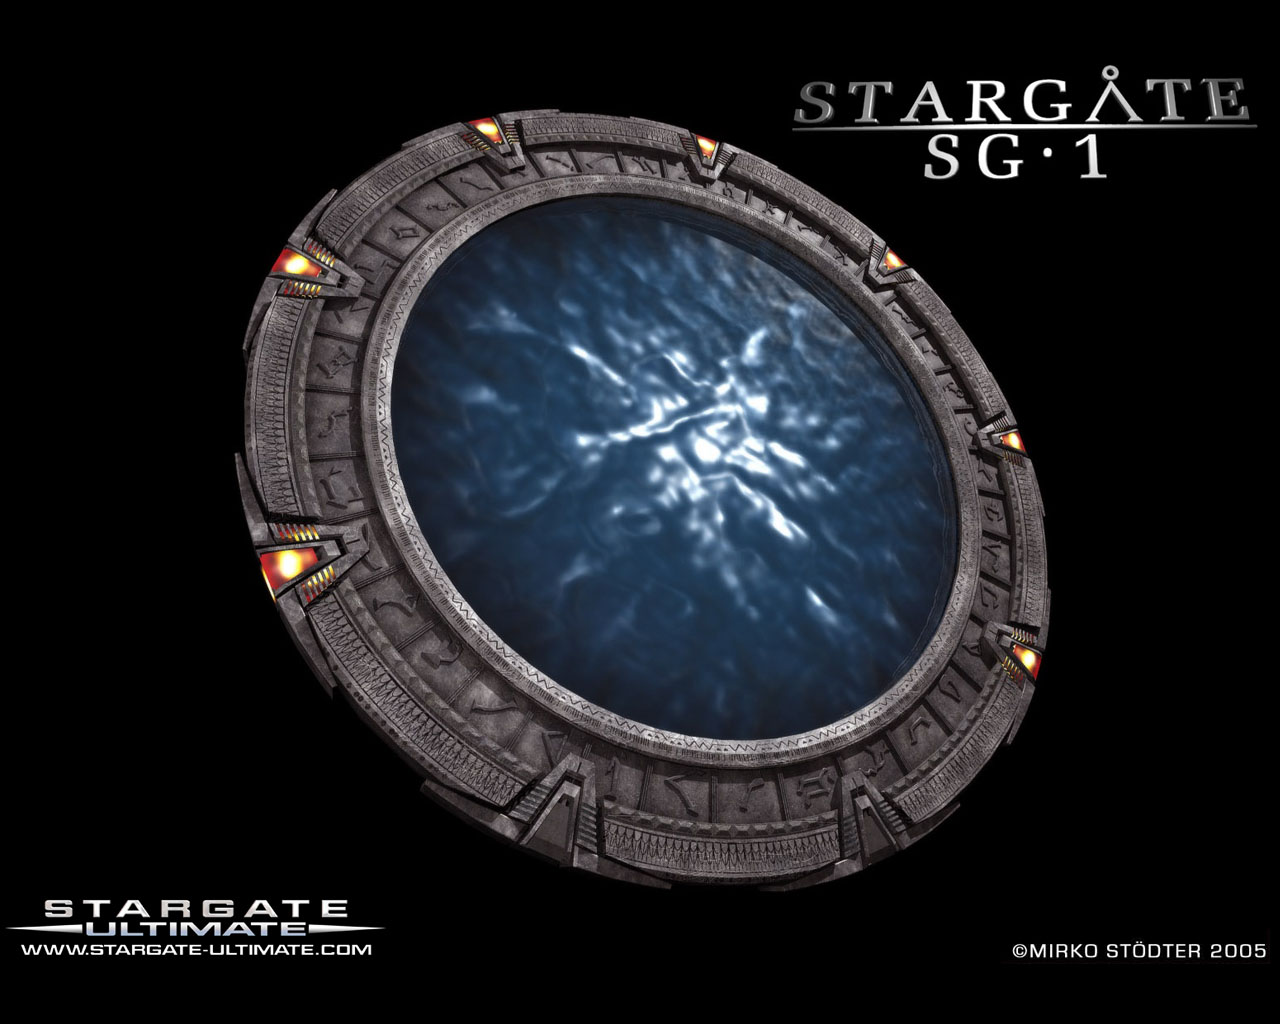 Stargate Wallpaper